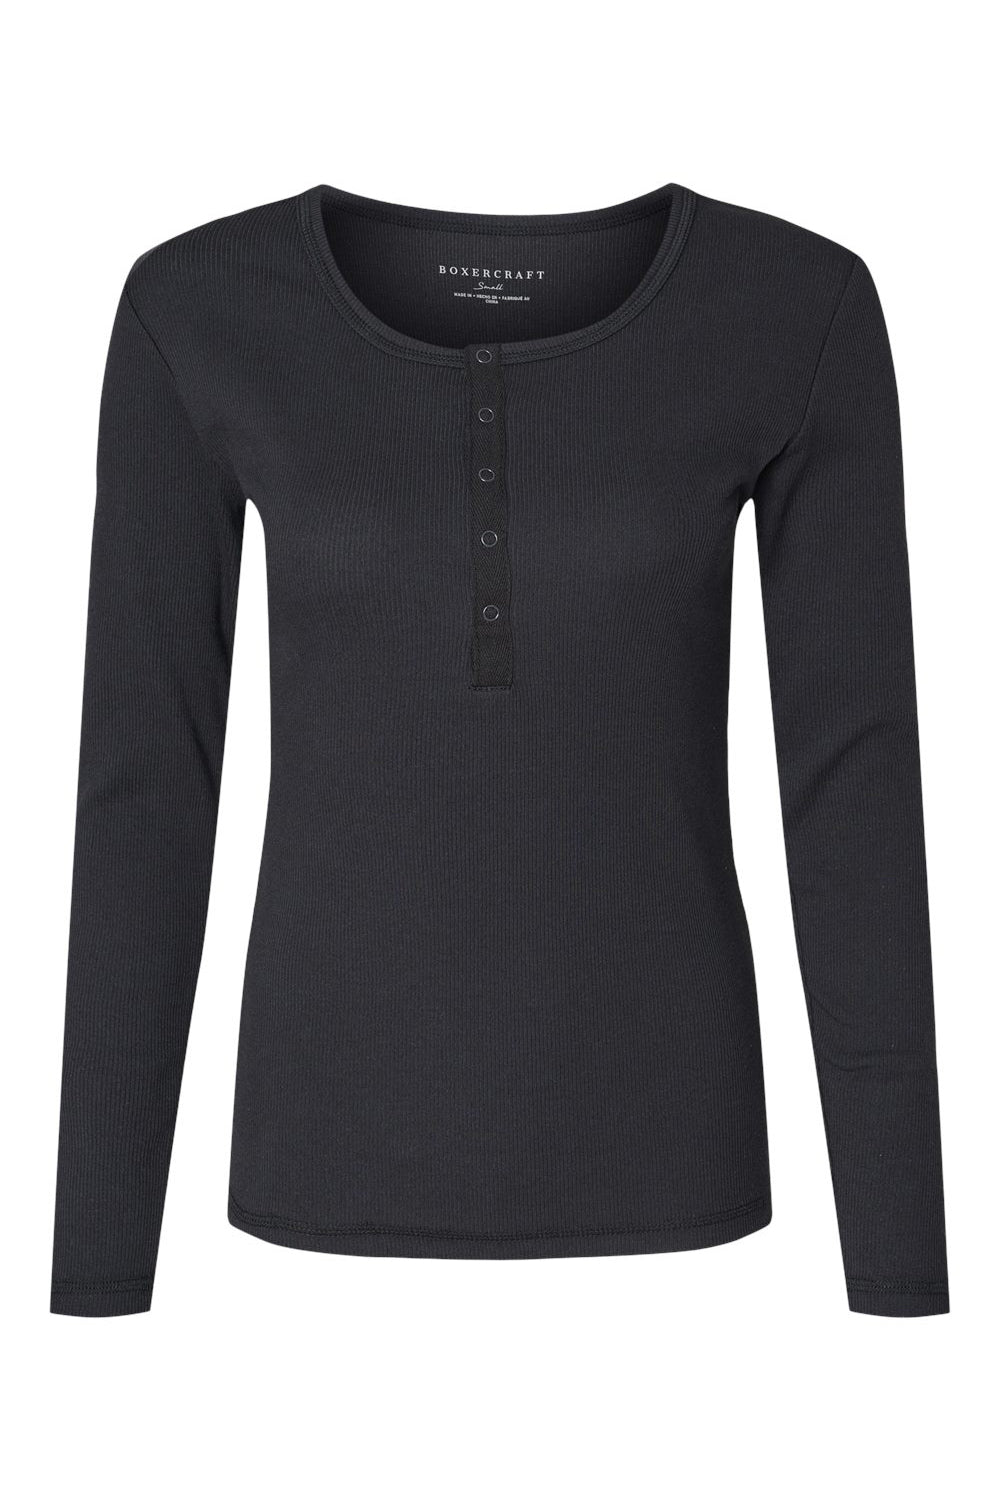 Boxercraft BW2402 Womens Harper Long Sleeve Henley T-Shirt Black Flat Front